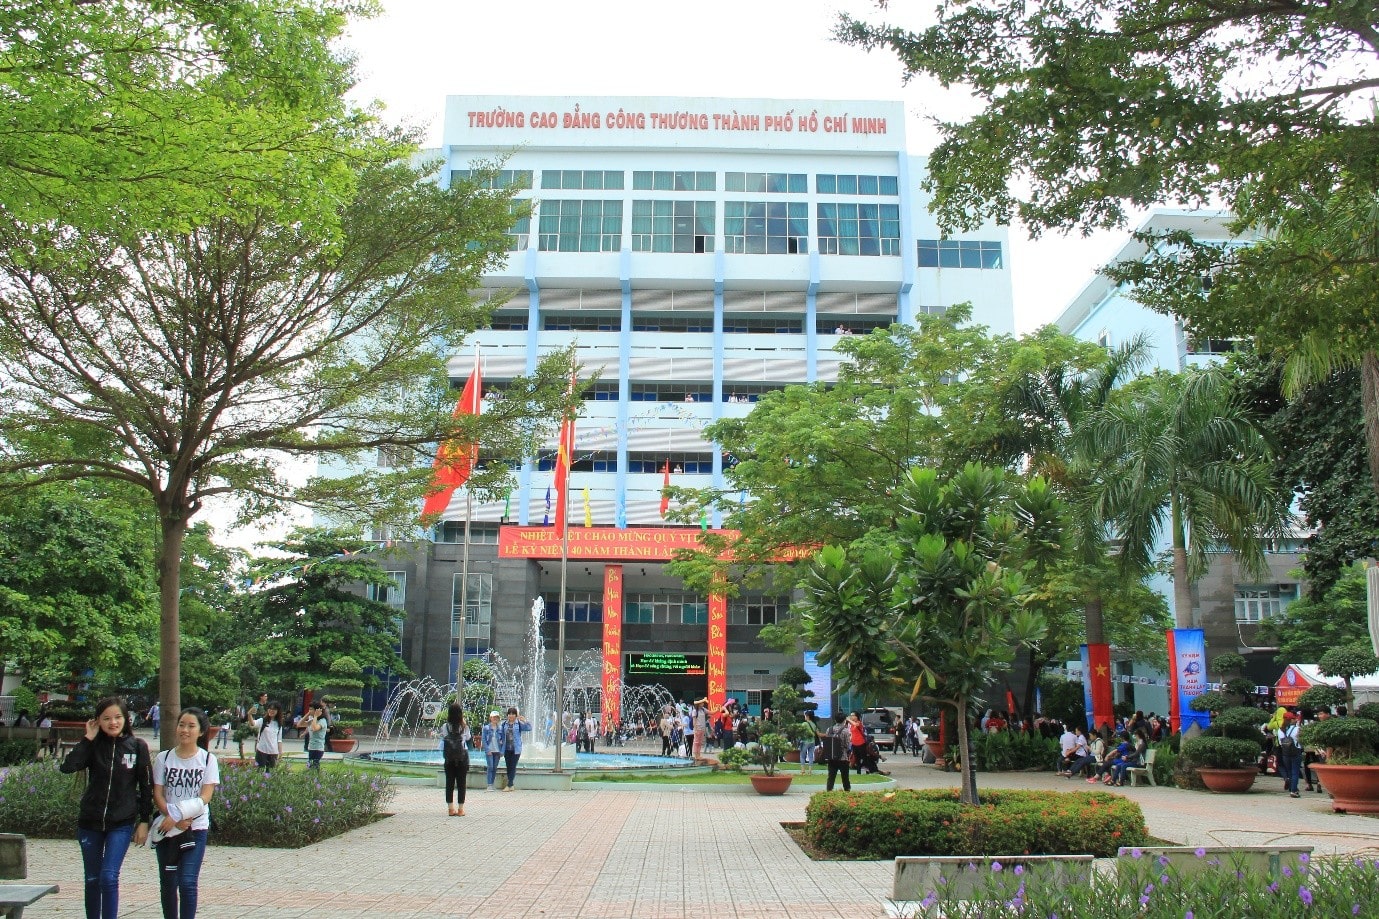 Trường Cao Đẳng Công Thương Thành Phố Hồ Chí Minh